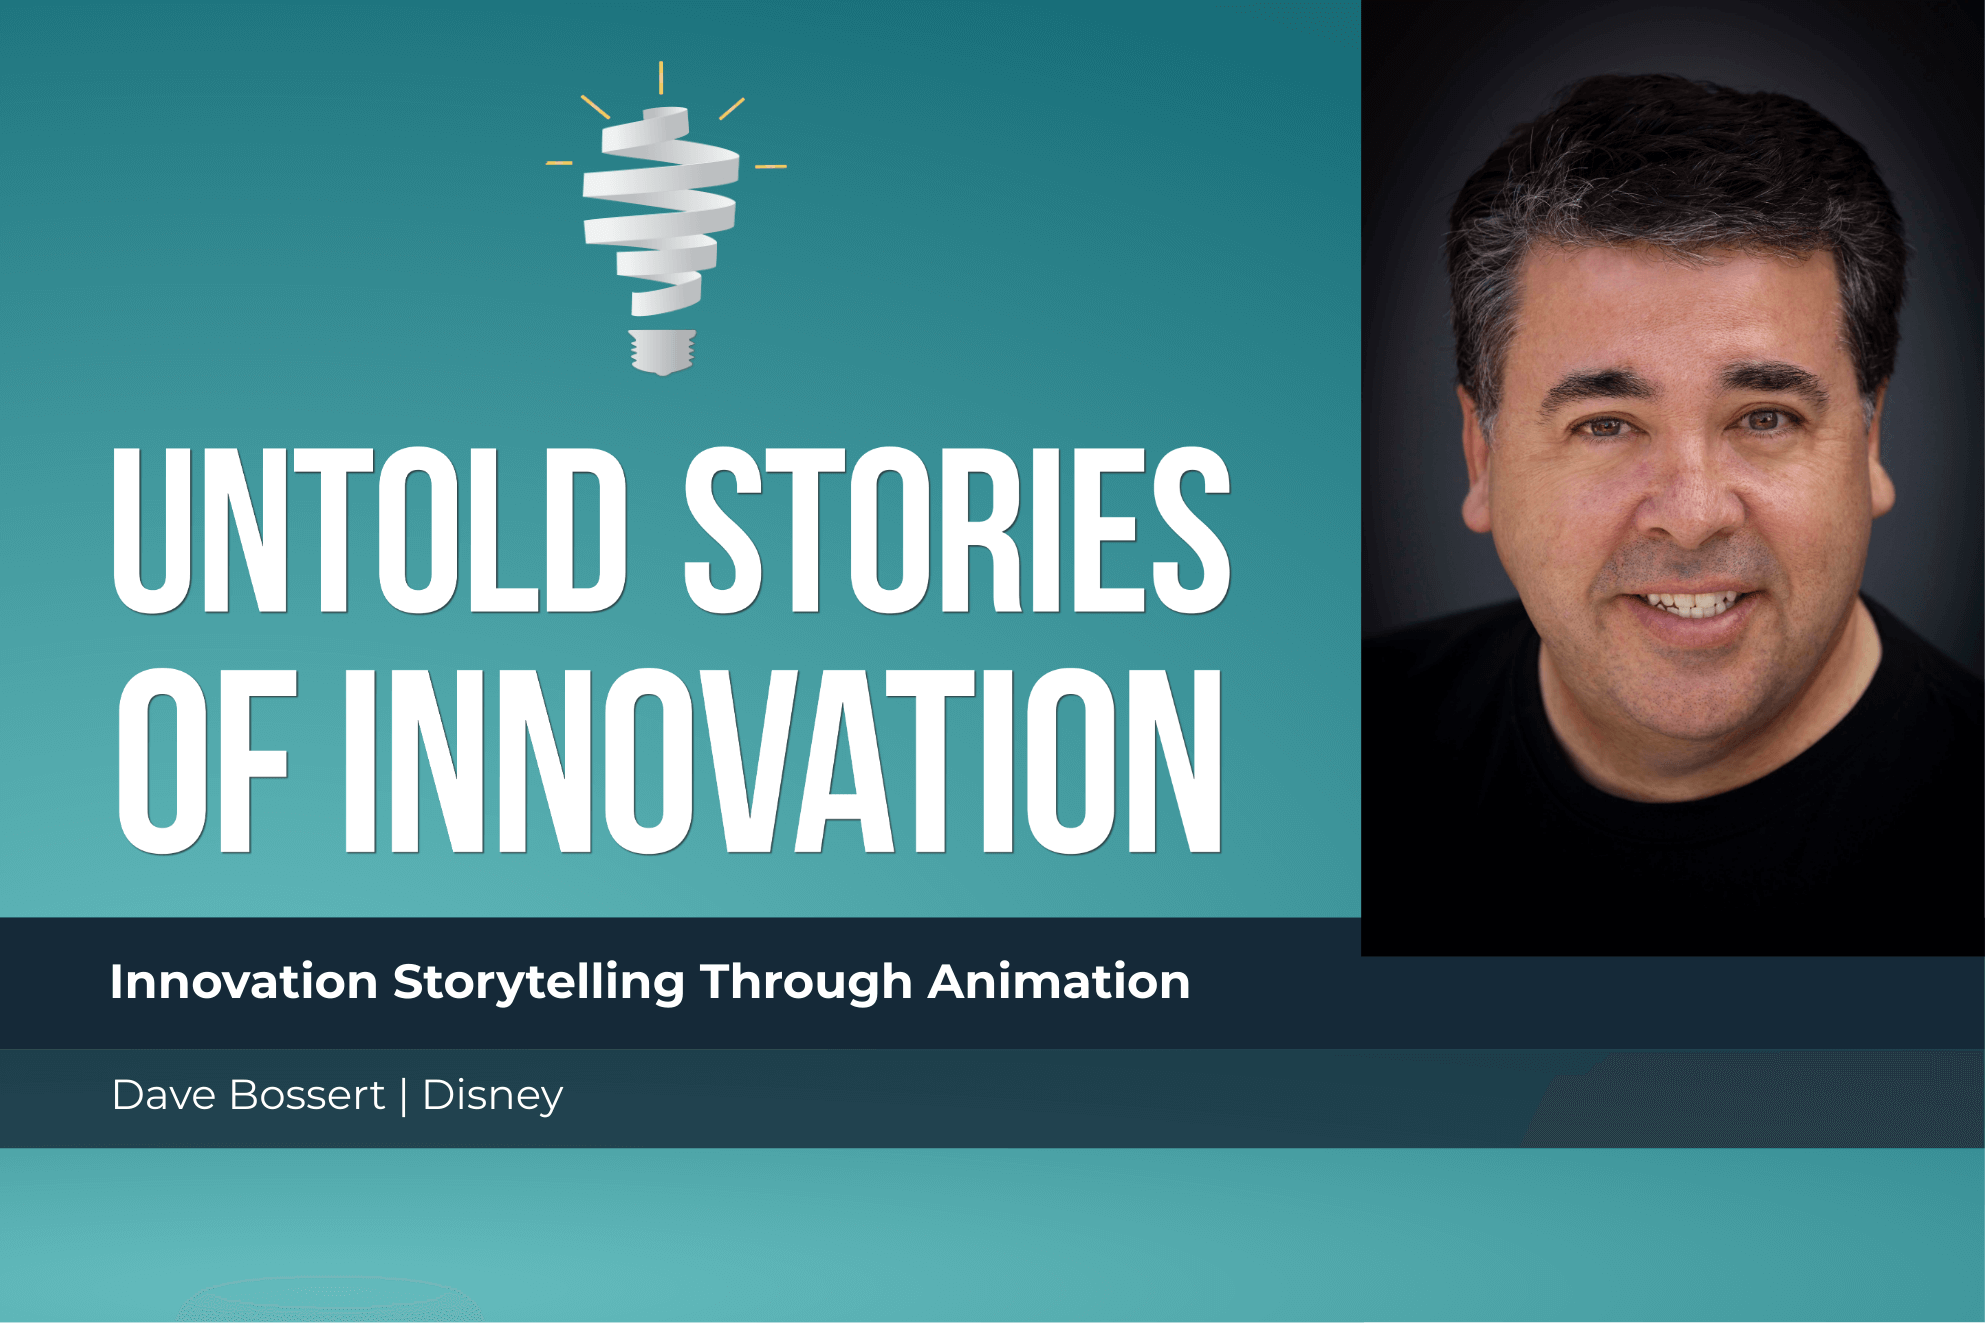 Innovation Storytelling through Animation